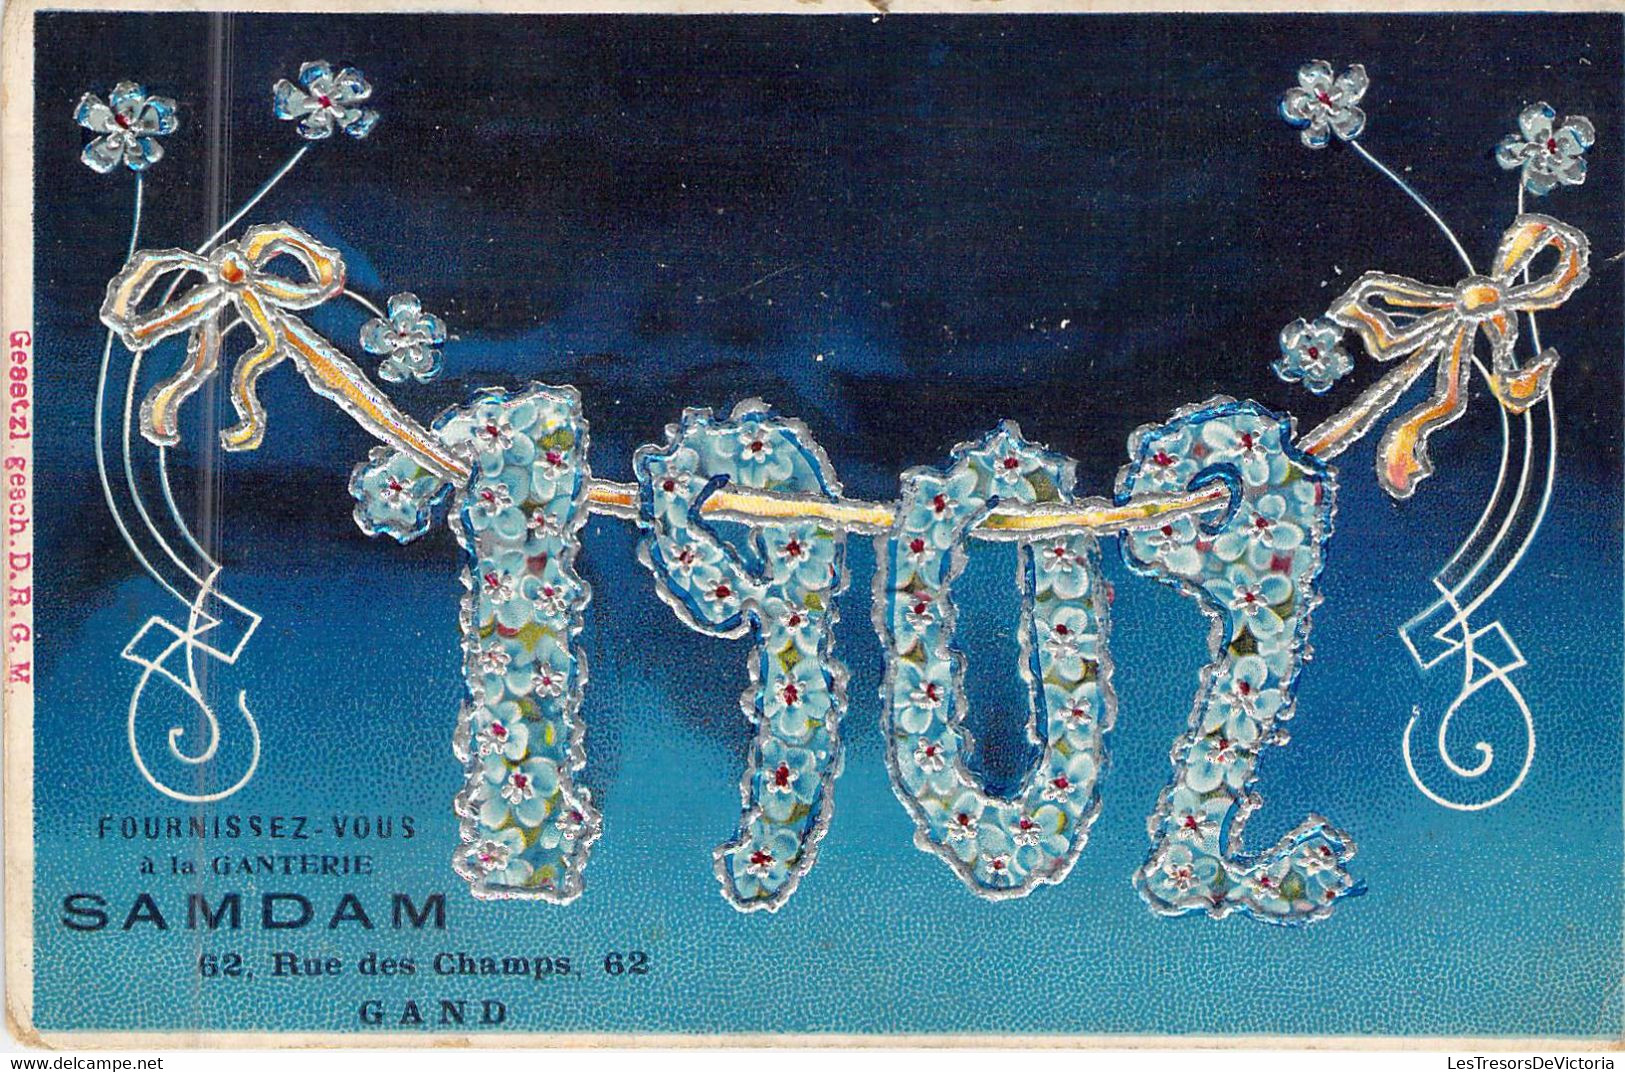 PUBLICITE - 1902 - Fournissez Vous à La Ganterie SAMDAM - Gand -  Carte Postale Ancienne - Advertising